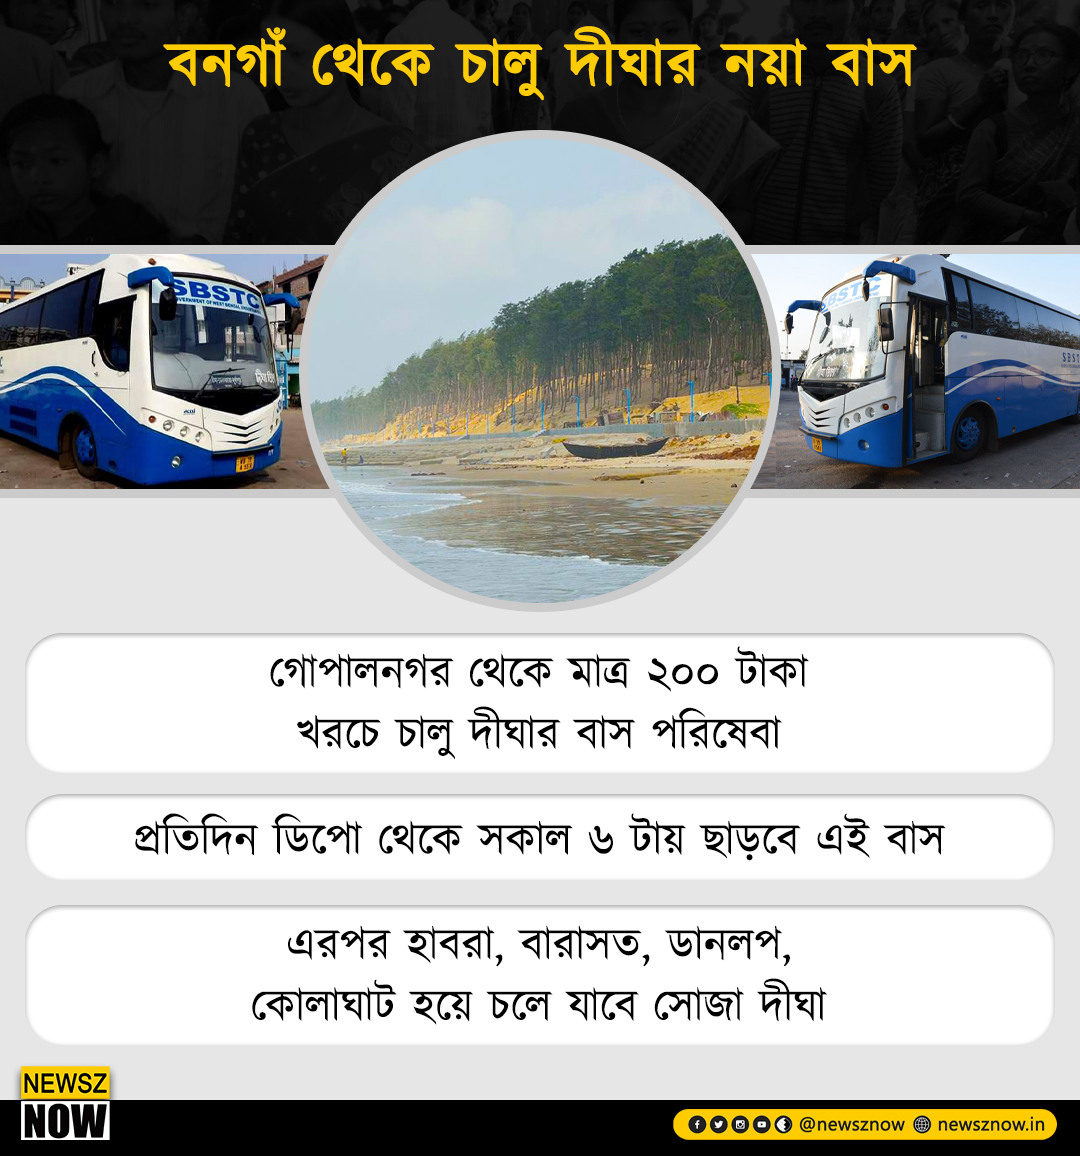 উত্তর ২৪ পরগনার মানুষজন যাতে সহজে দীঘা পৌঁছতে পারে তাই শুরু আরও এক বাস পরিষেবা

One more #bus service started to enable the people of #North24Parganas district reach #Digha easily

#Bengal #tourism #BongaonDighaSBSTCBus #NewszNow